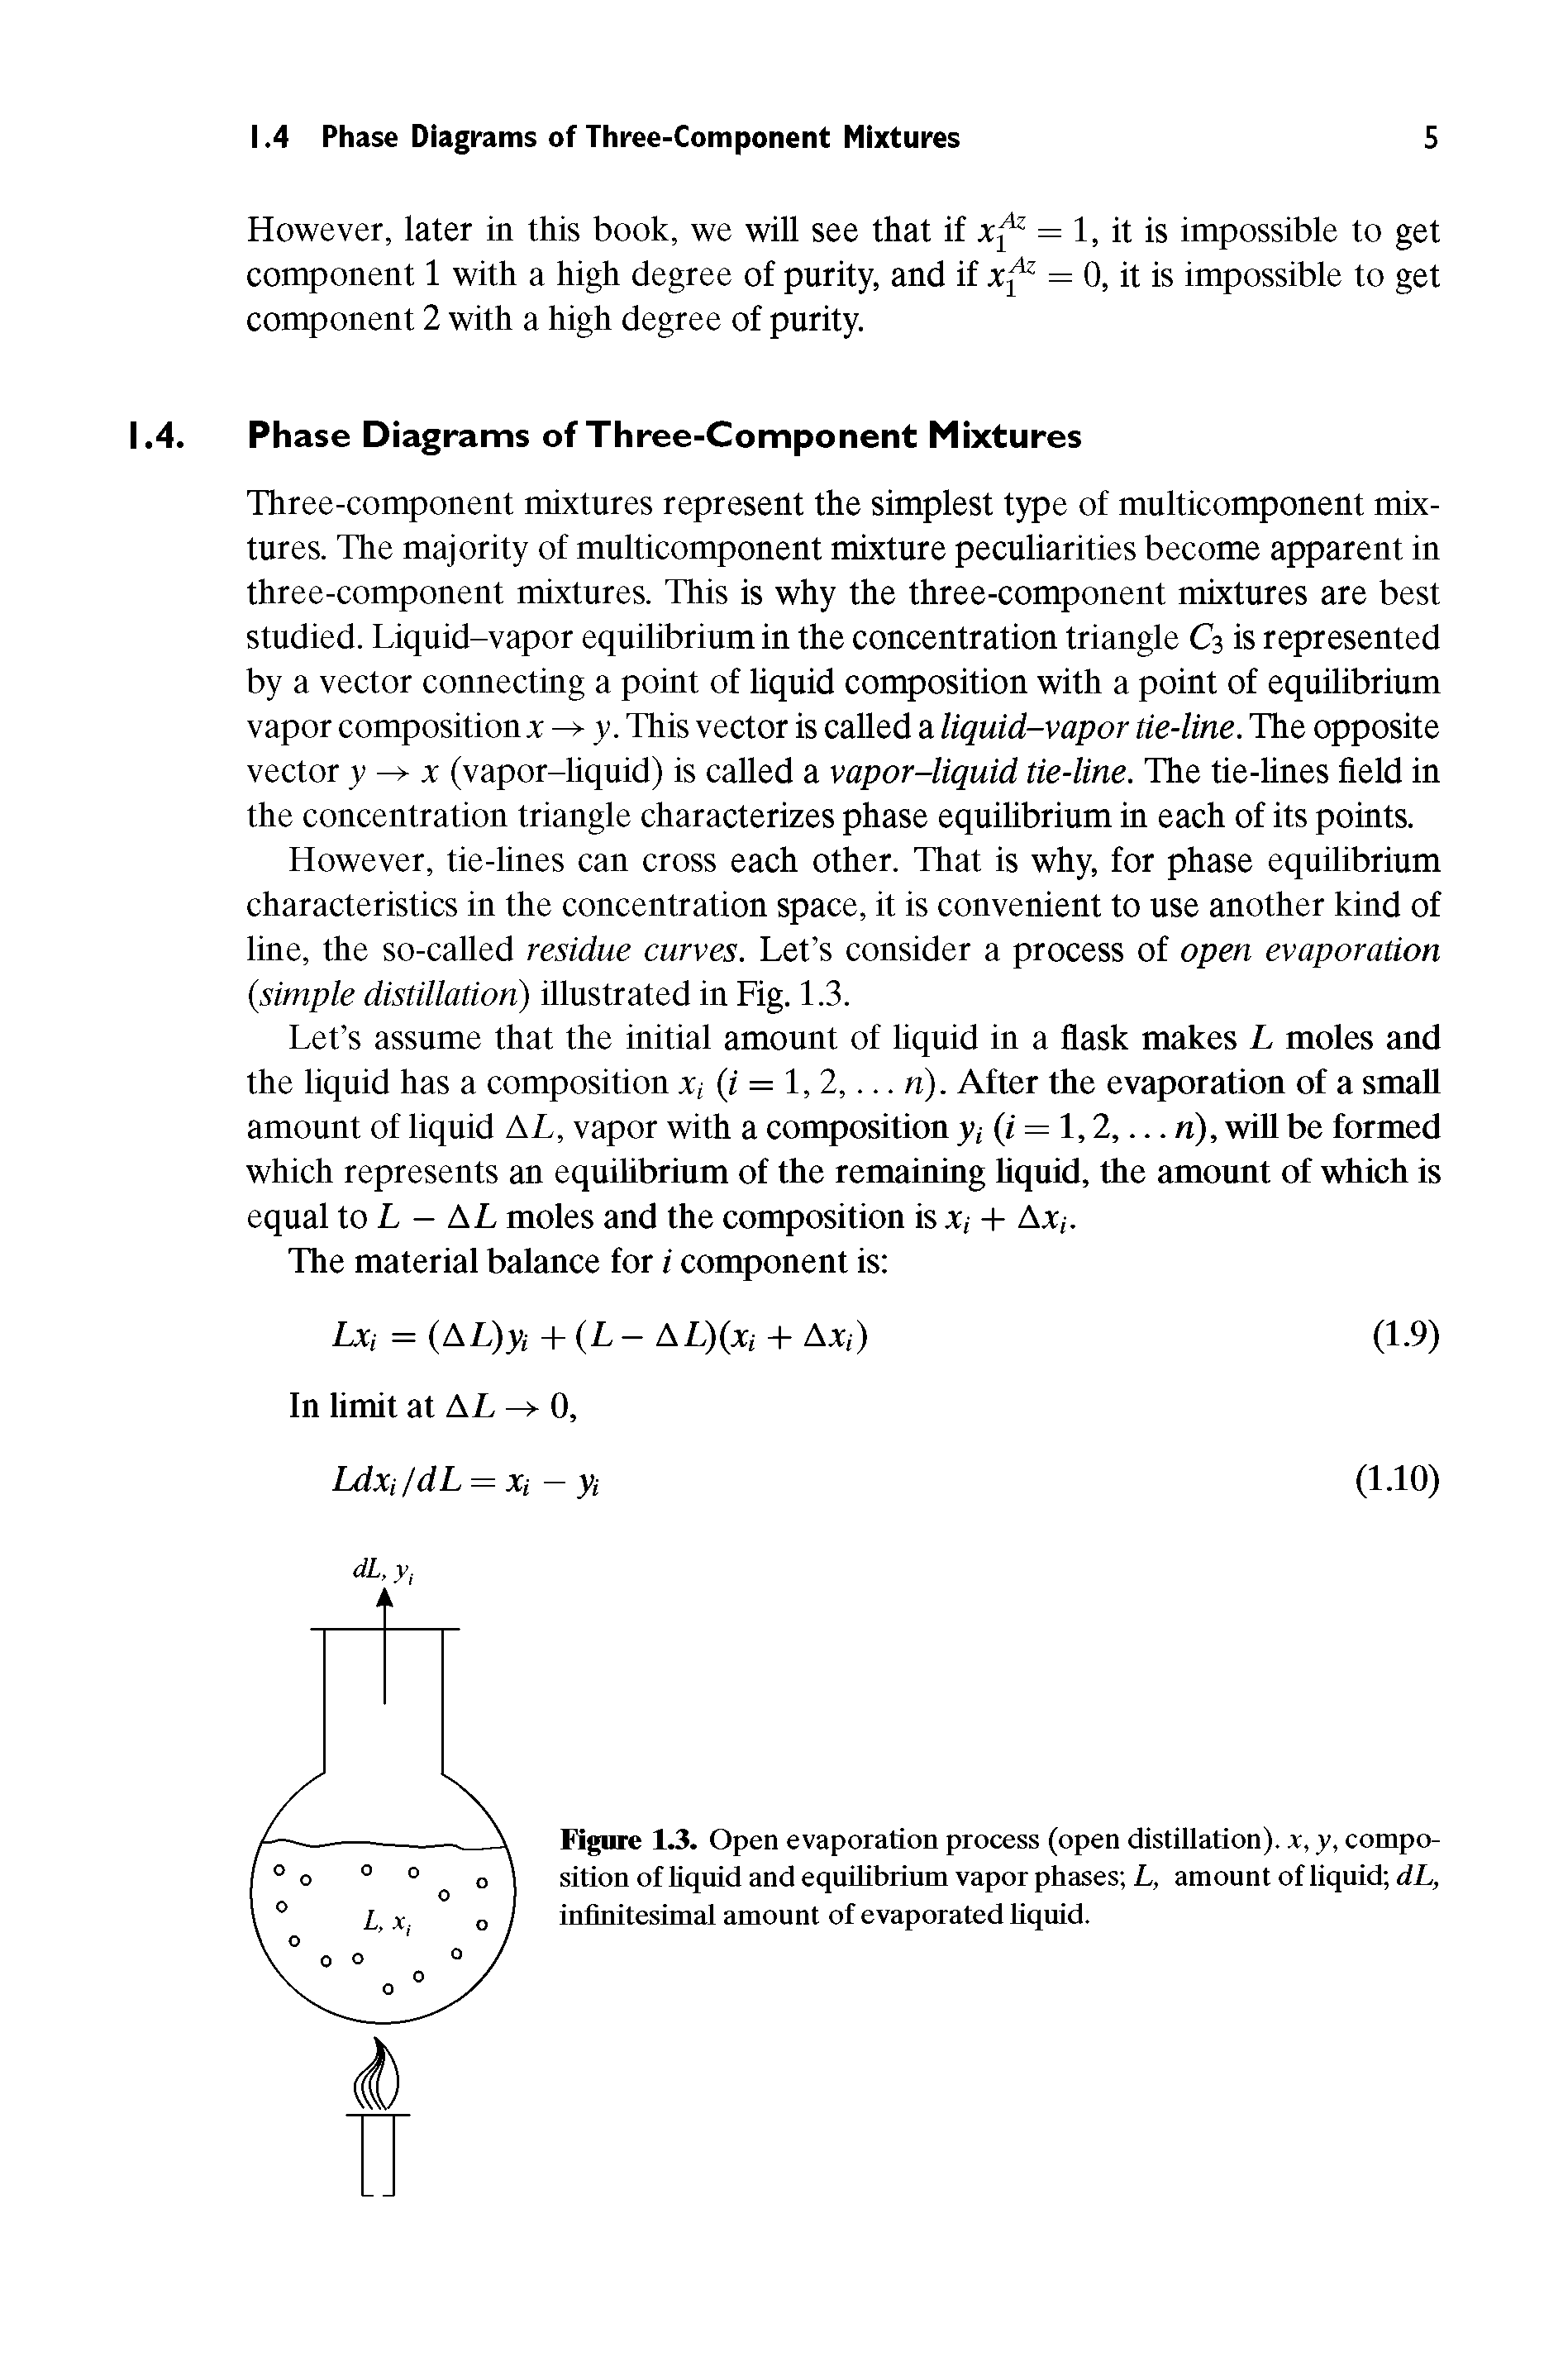 Figure 1.3. Open evaporation process (open distillation), x, y, composition of liquid and equrtibrium vapor phases L, amount of liquid dL, infinitesimal amount of evaporated hquid.